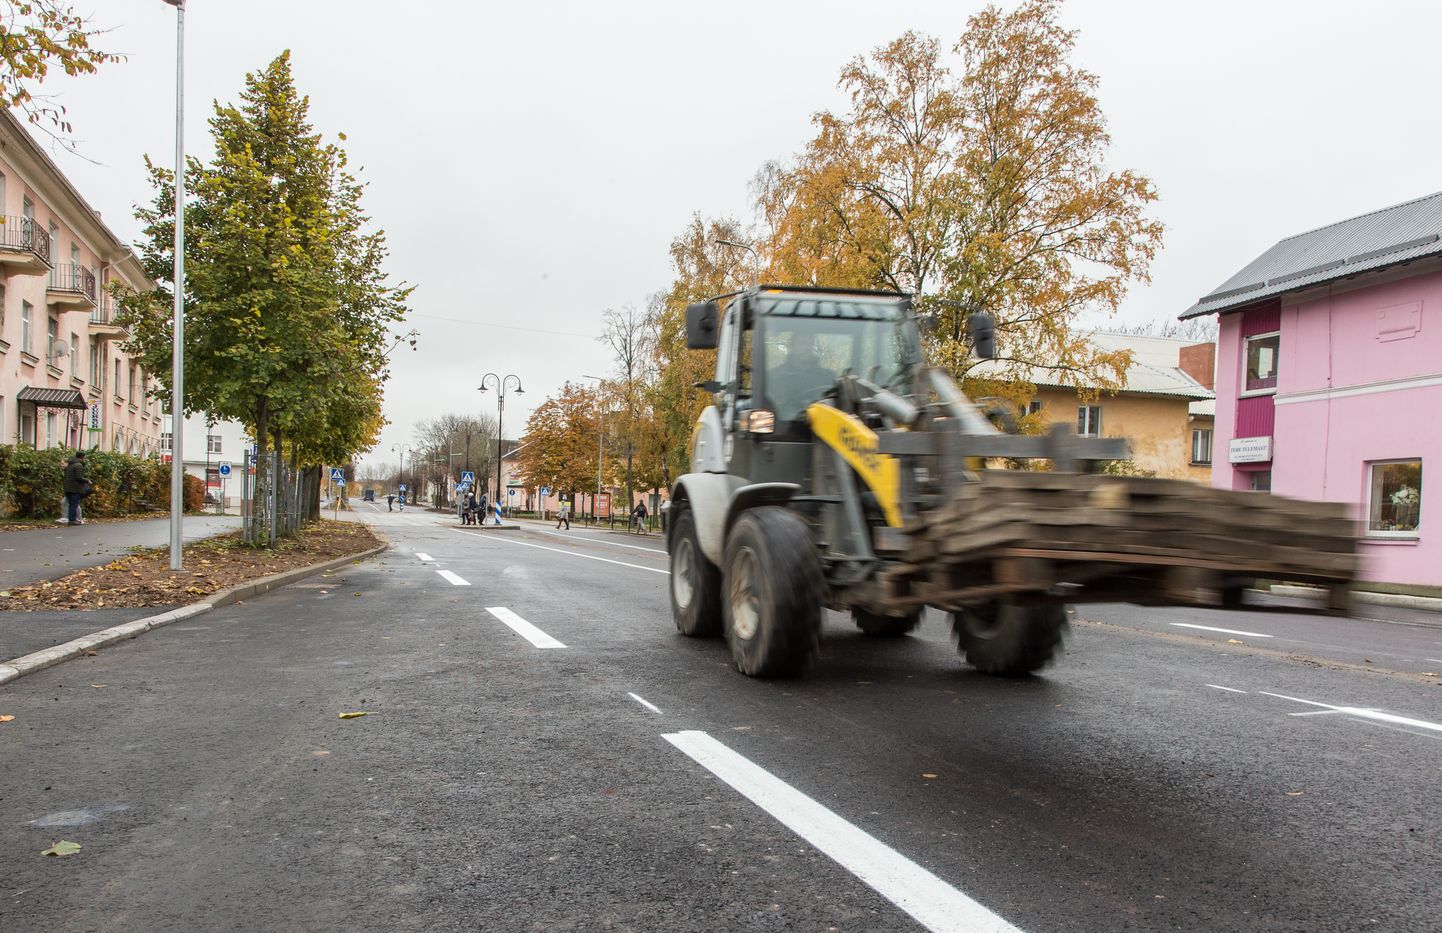 Первый этап реконструкции улицы Калеви столичная фирма "TREV-2 Grupp" успешно завершила в октябре прошлого года.